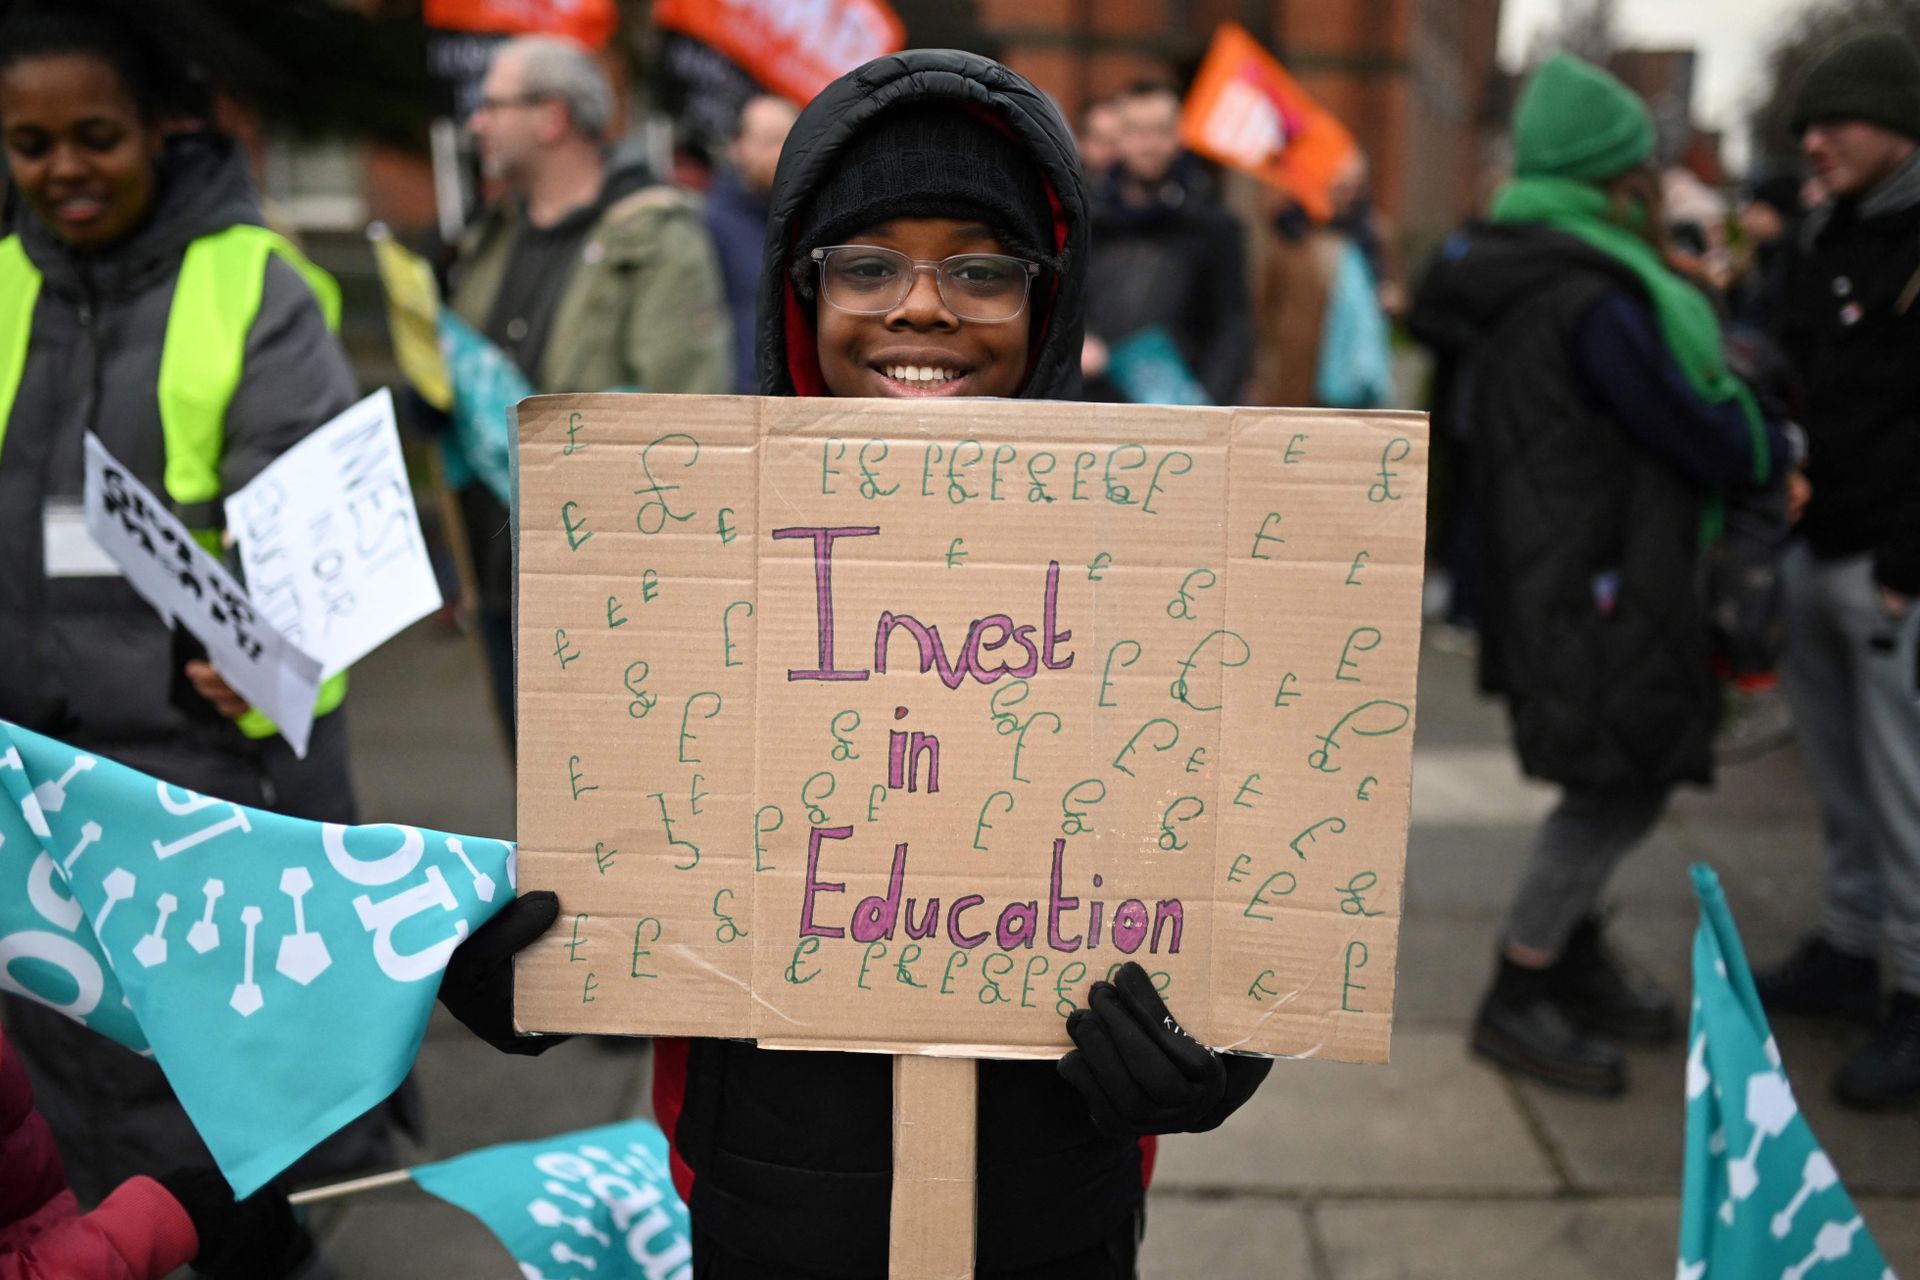 En ung gutt med briller, lue og varm jakke står sammen med mange voksne og holder et pappskilt som det står "Invester i utdanning" på. 